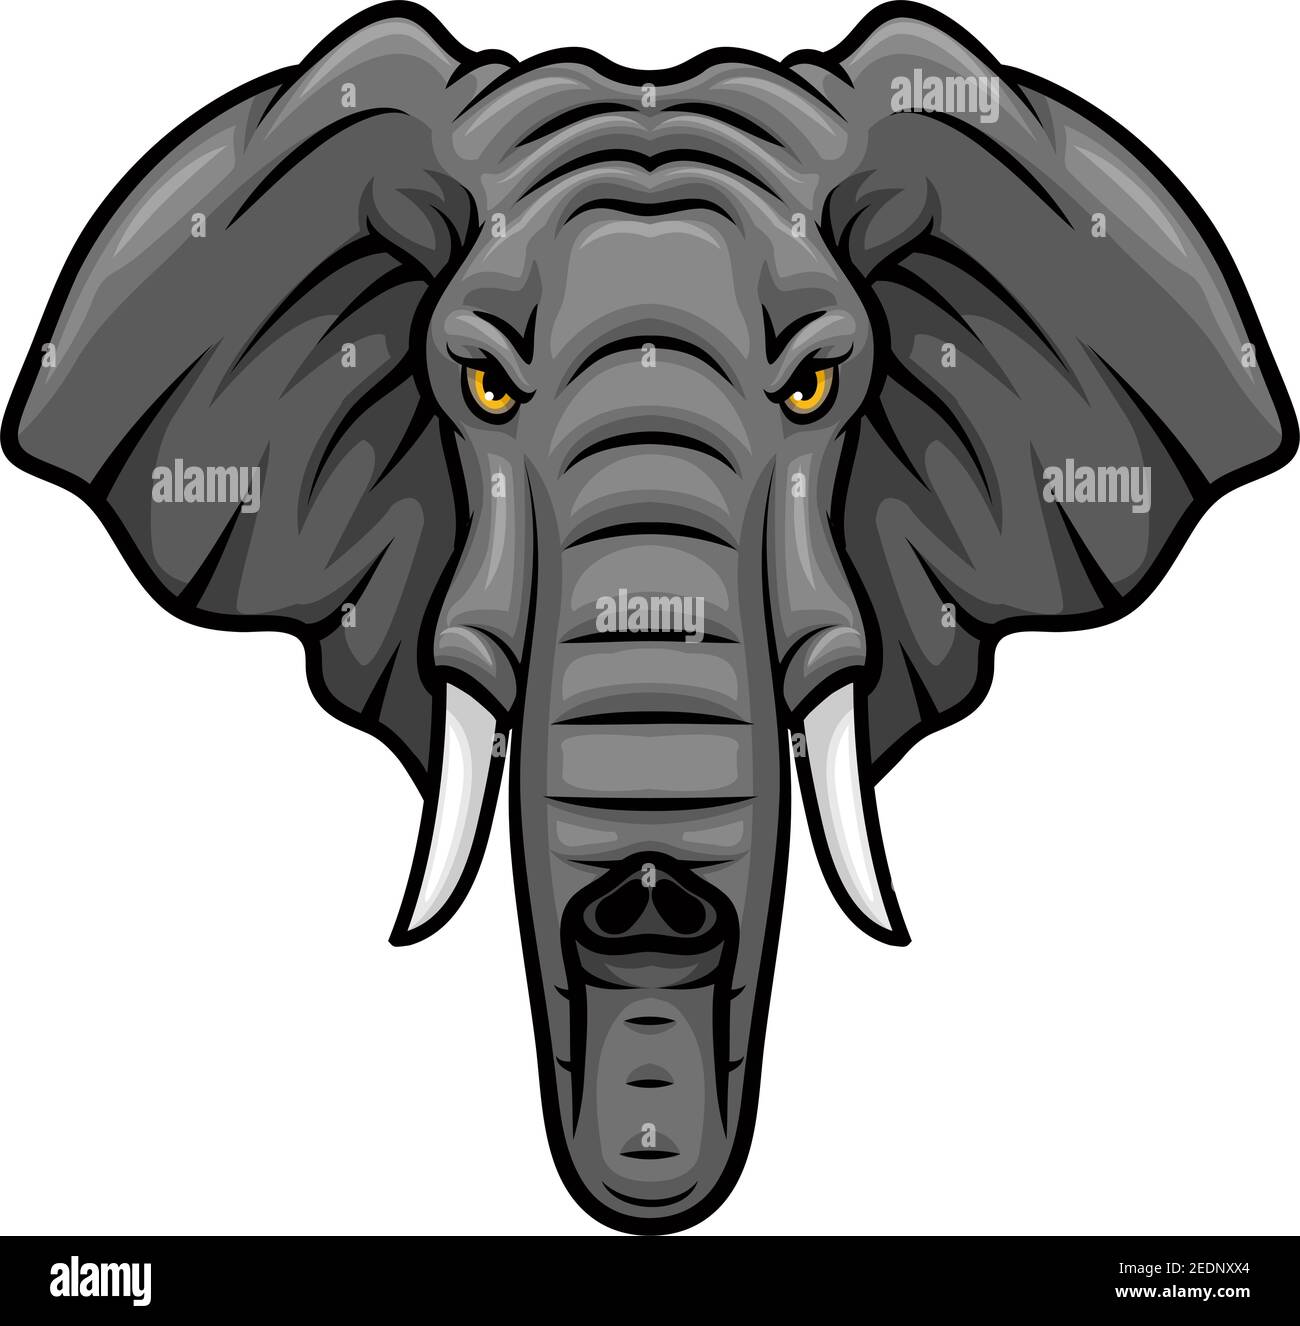 Icona della mascotte vettoriale dell'elefante. Testa di elefante africano o indiano o animale di mammut con zanne e tronco. Emblema isolato design per la squadra sportiva, safari Illustrazione Vettoriale